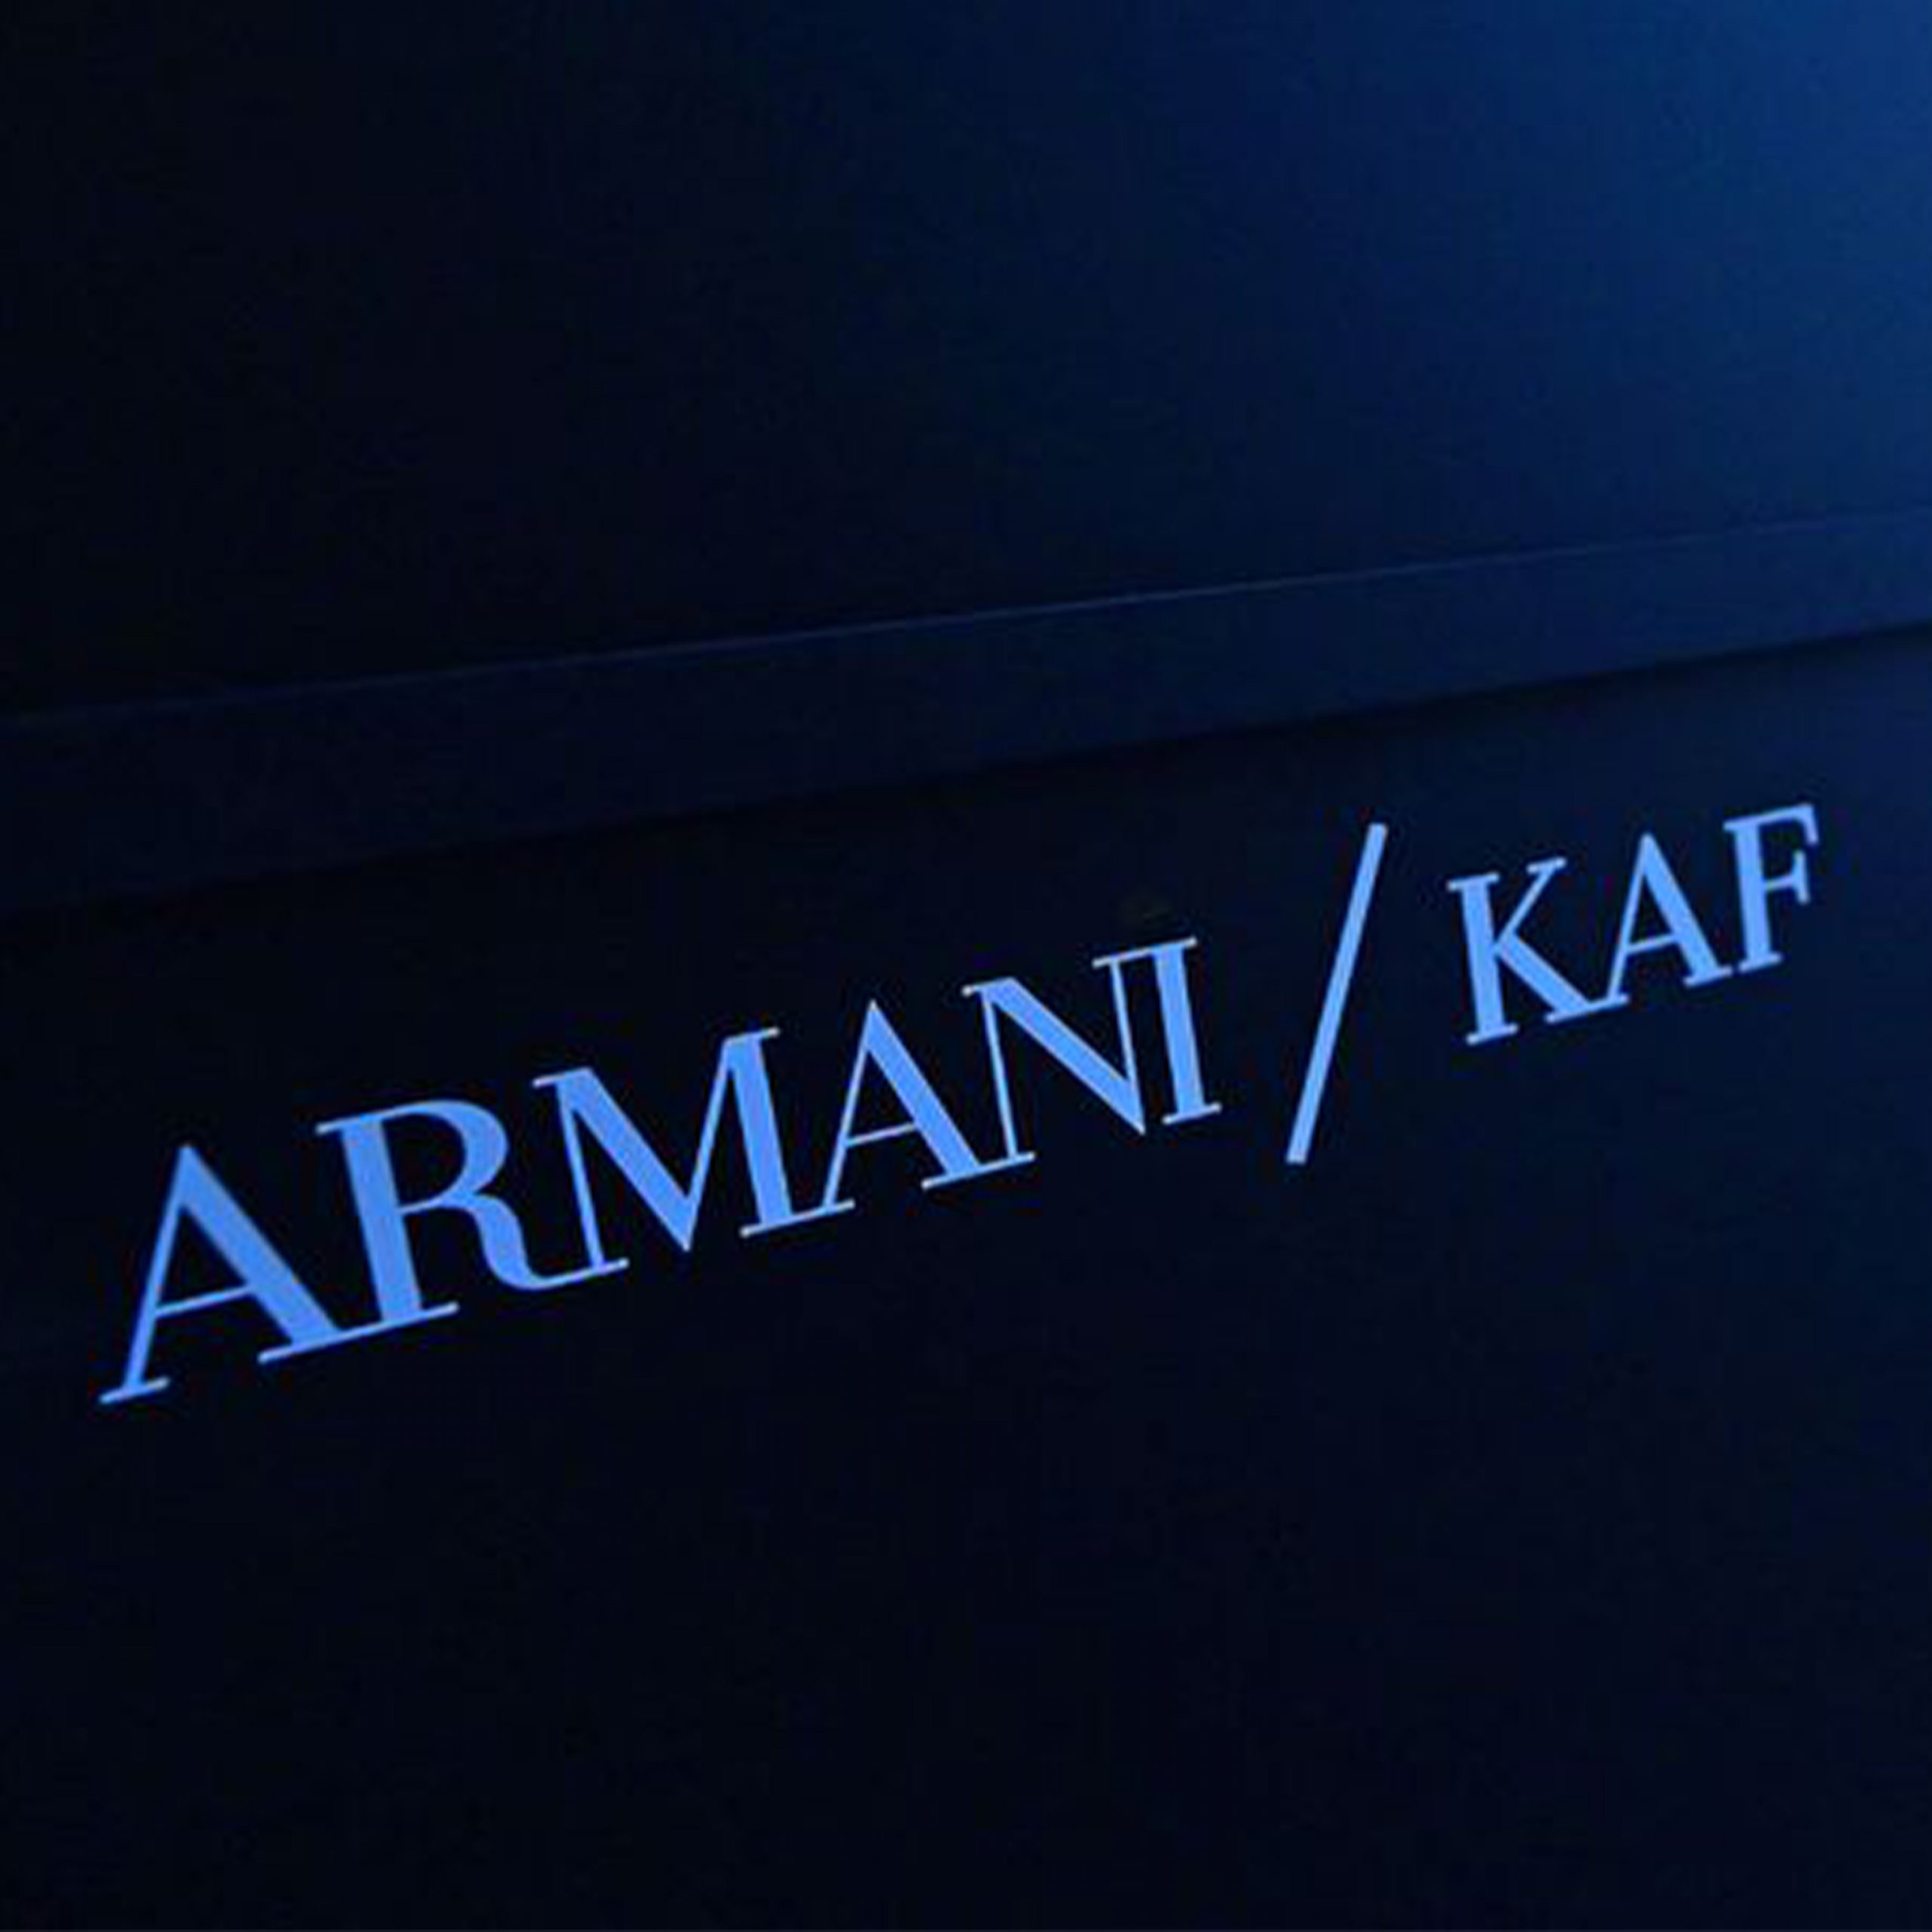 Armani/Kaf - Coming Soon in UAE